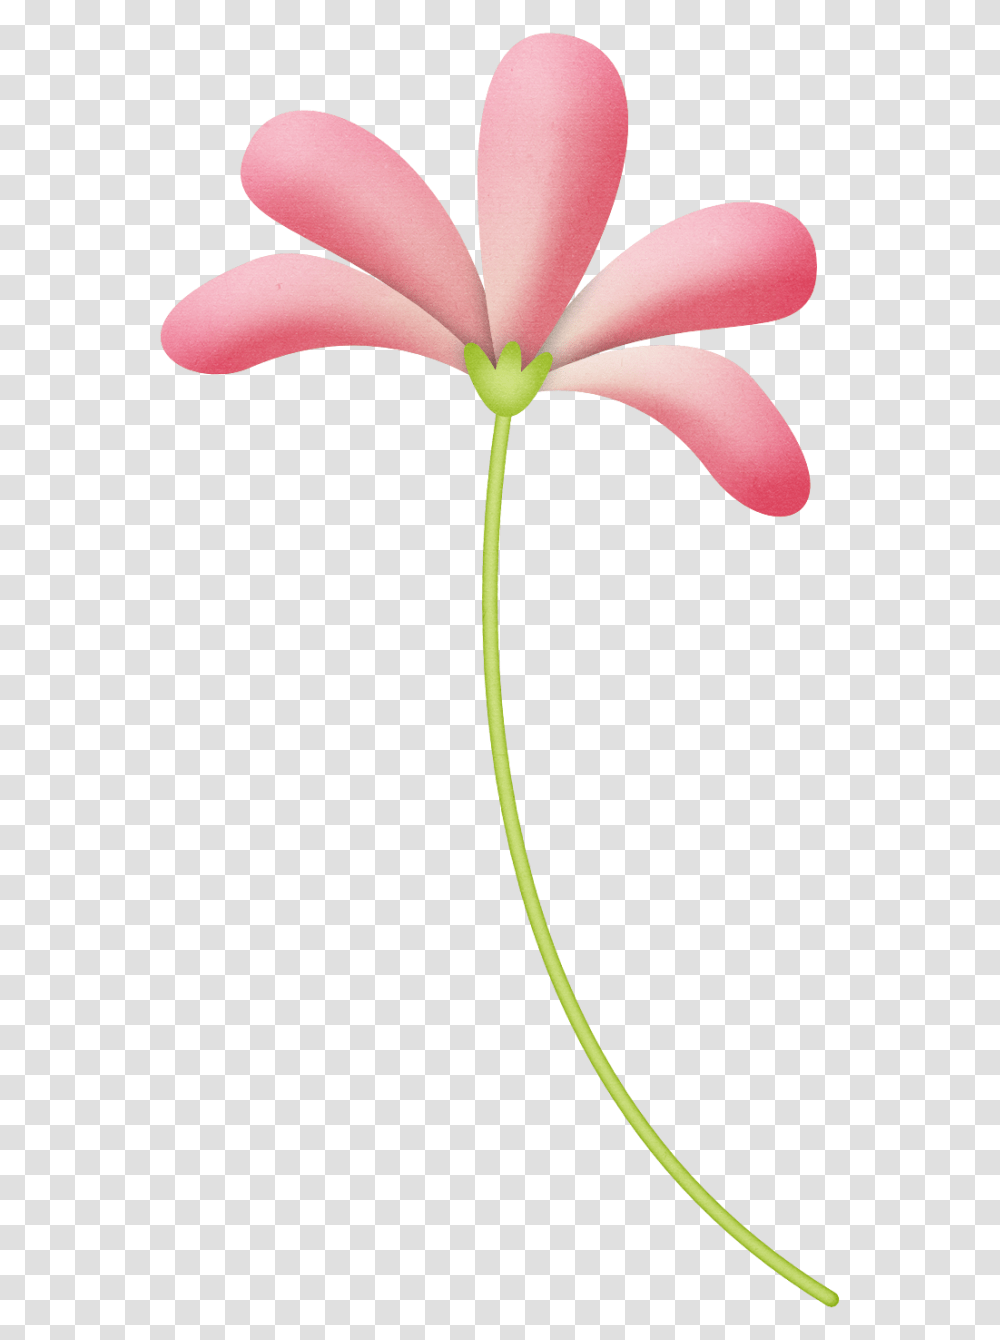 Flower Printable Flowers Flower Clipart, Plant, Petal, Blossom, Pollen Transparent Png